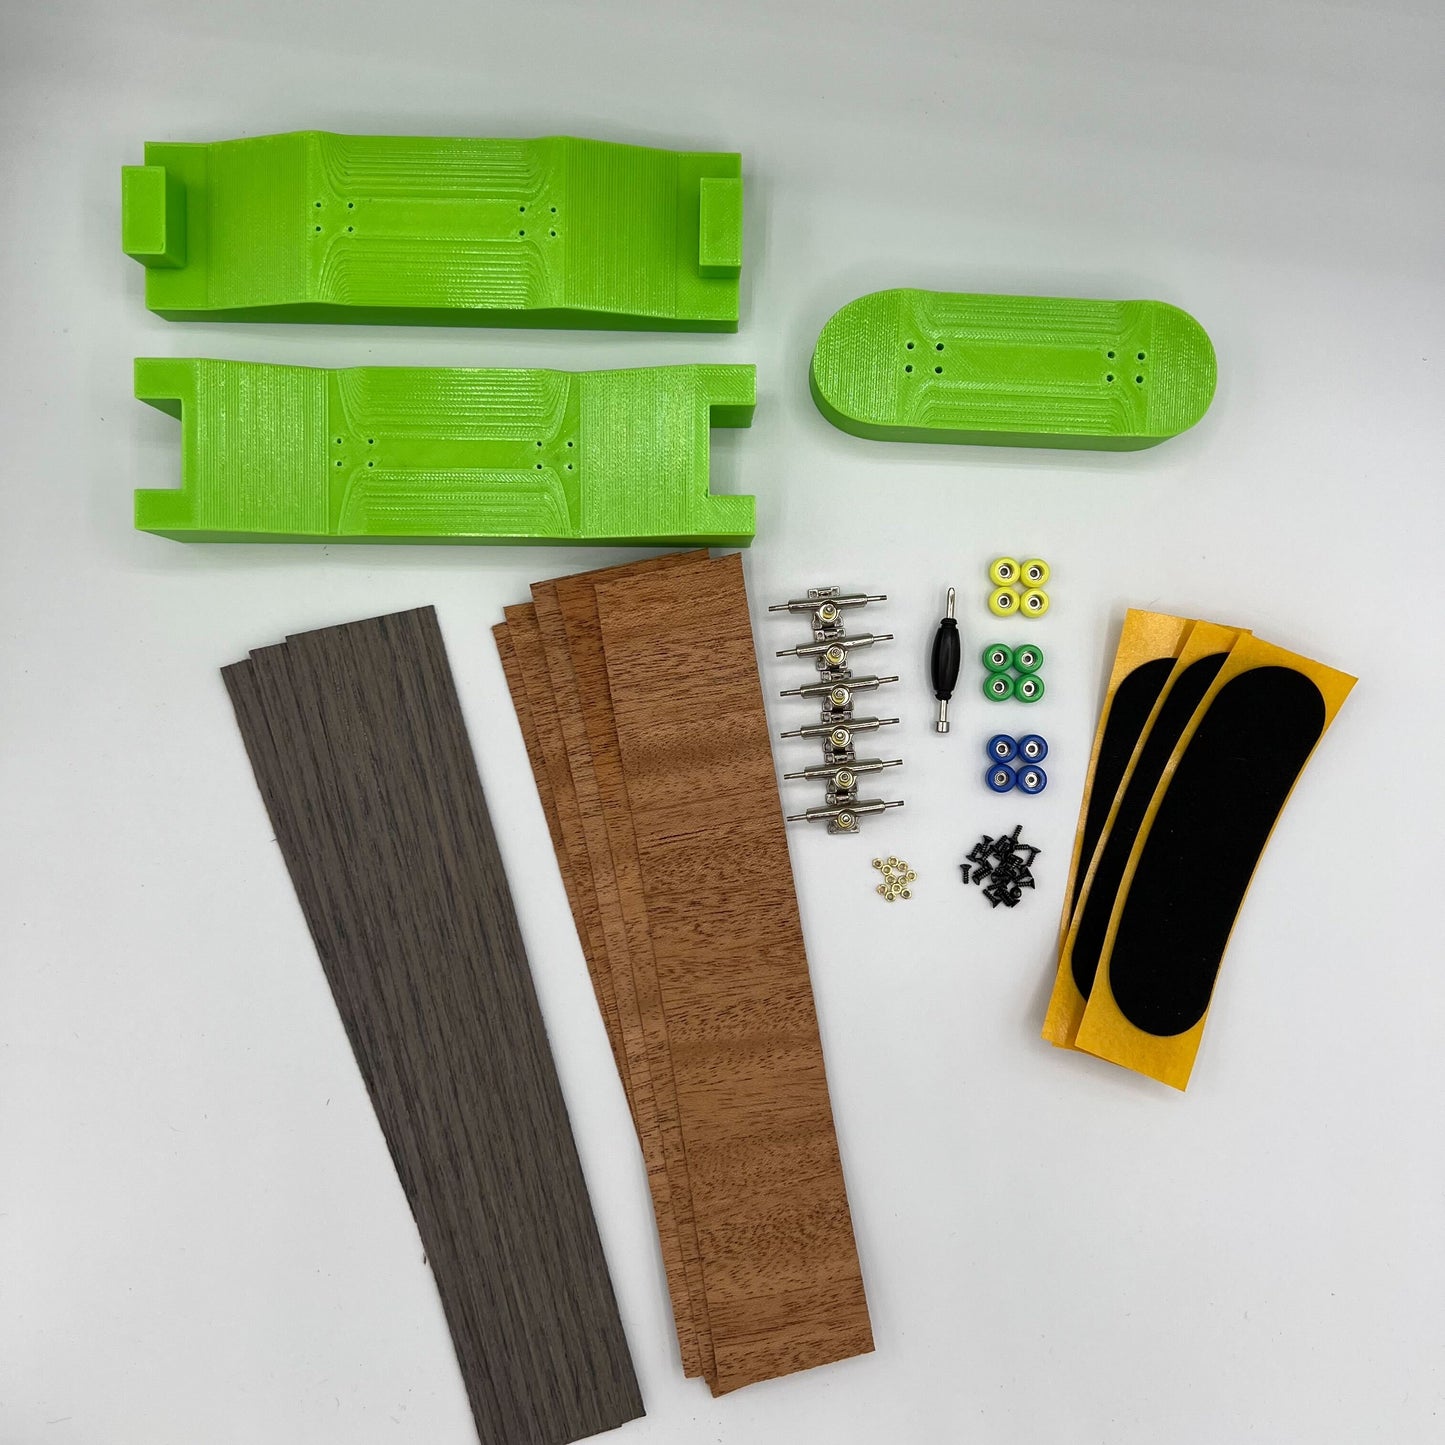 DIY Fingerboard Mold Kit - Makes 98mm x 32mm Fingerboards - Complete Kit